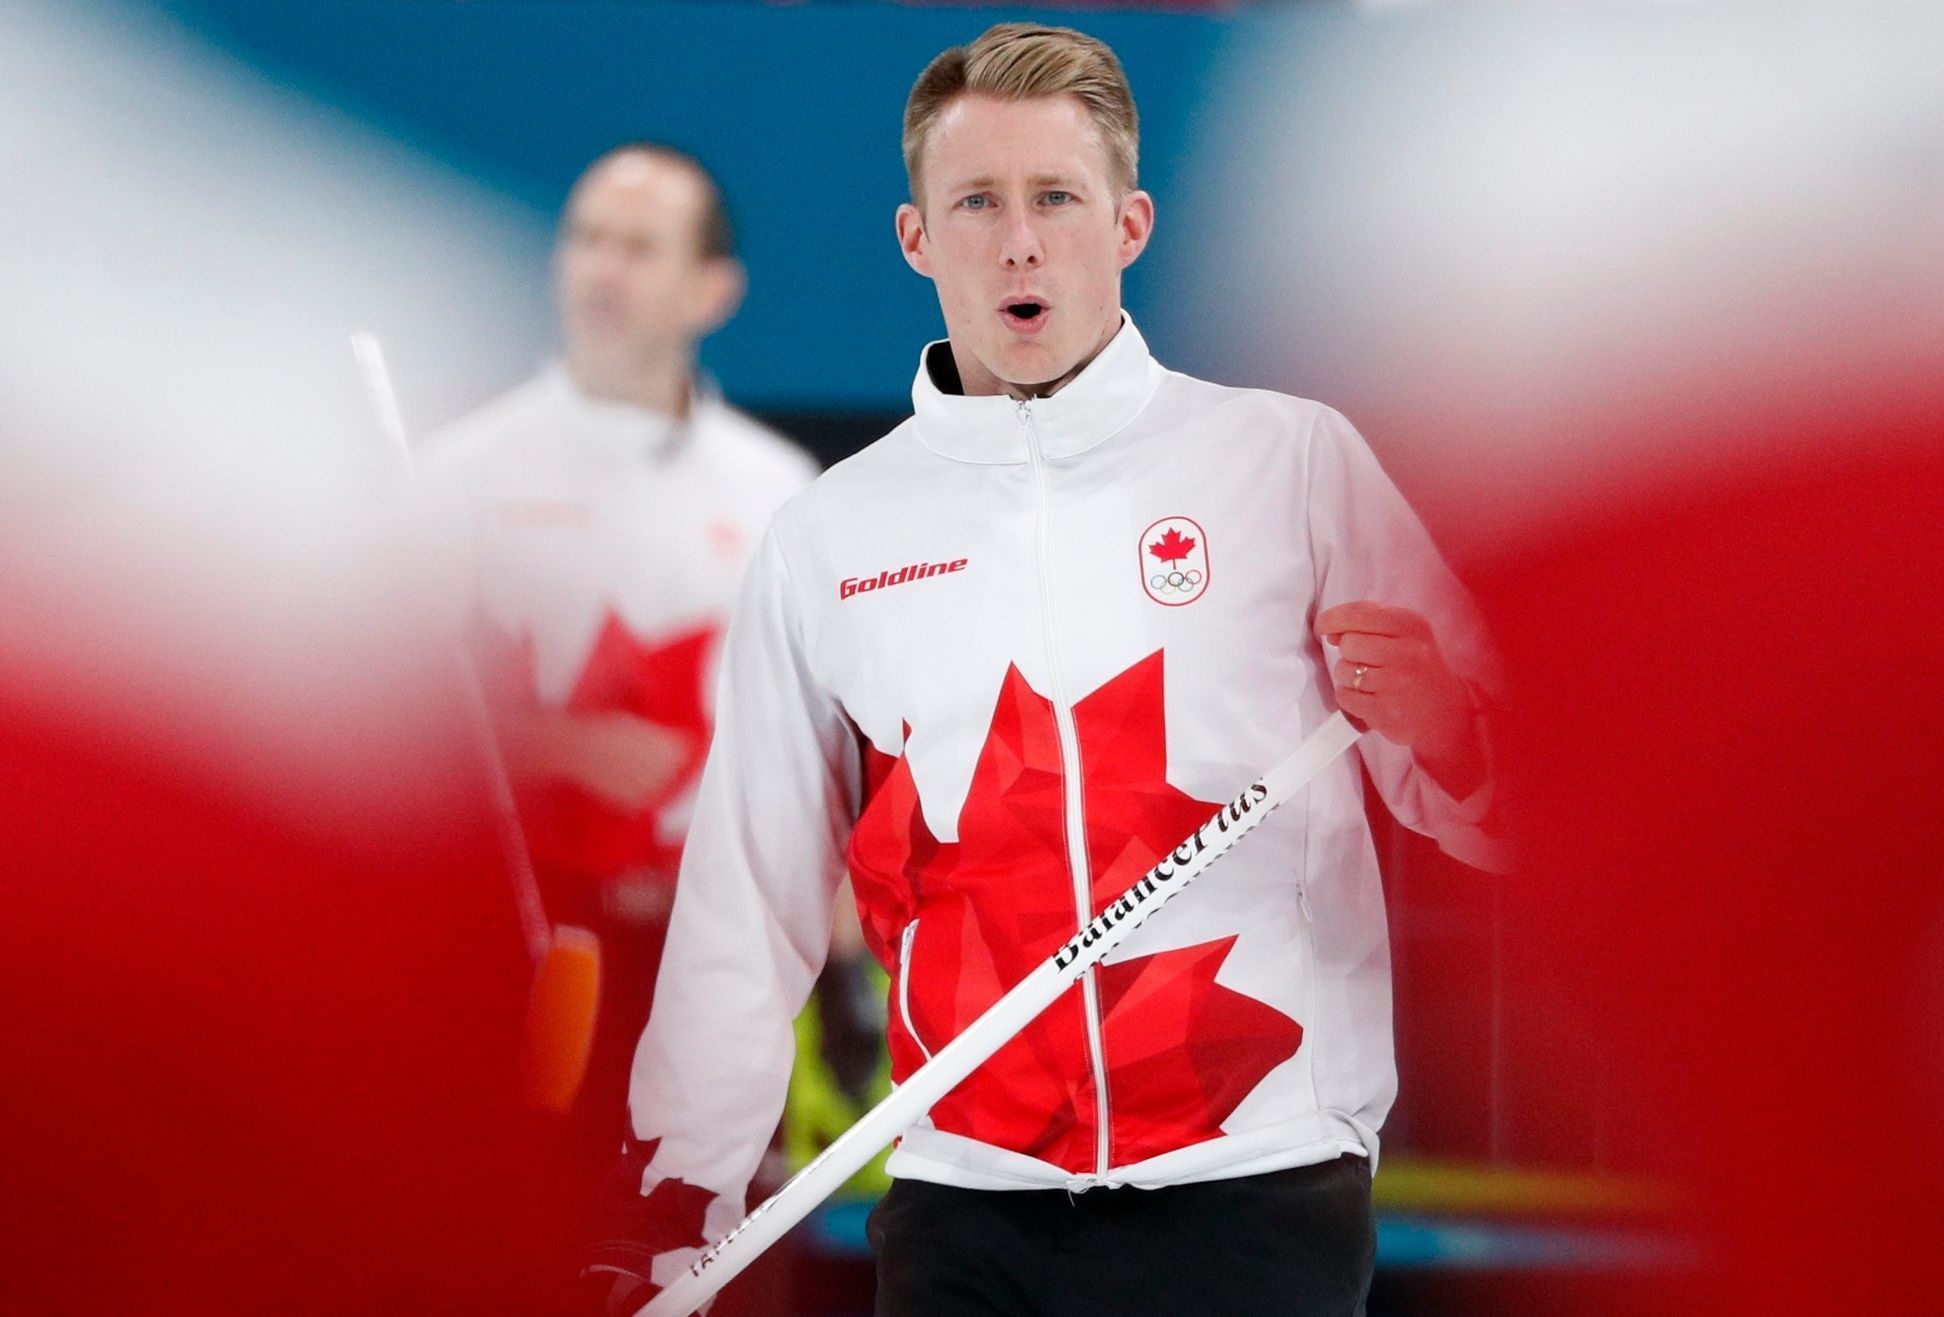 Kanadští curleři v utkání o bronz na ZOH 2018